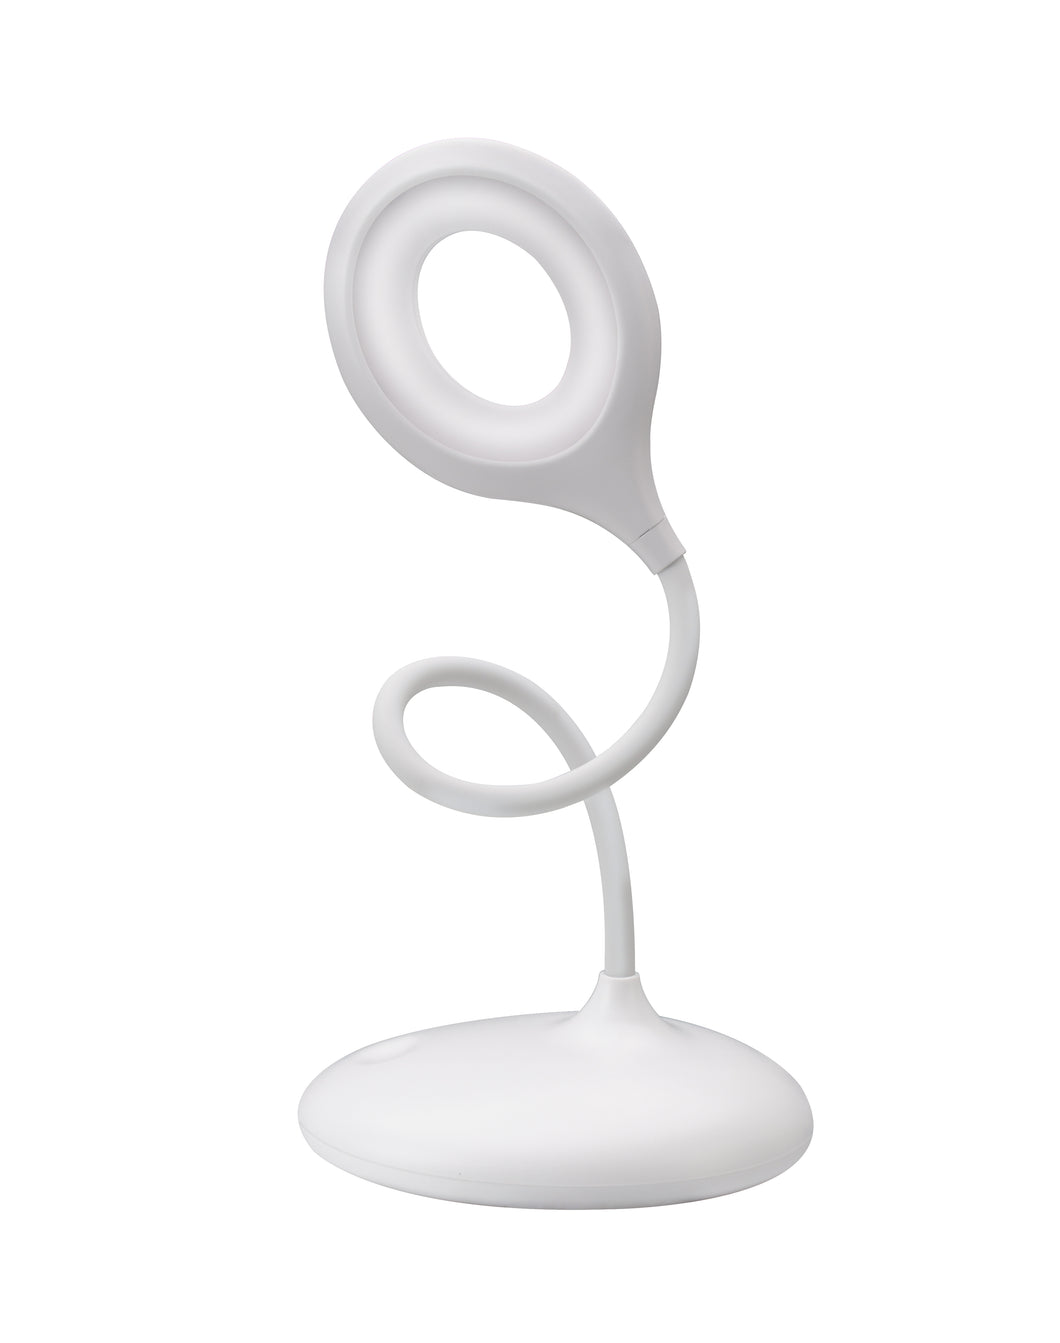 Qware Desk light Toronto – White